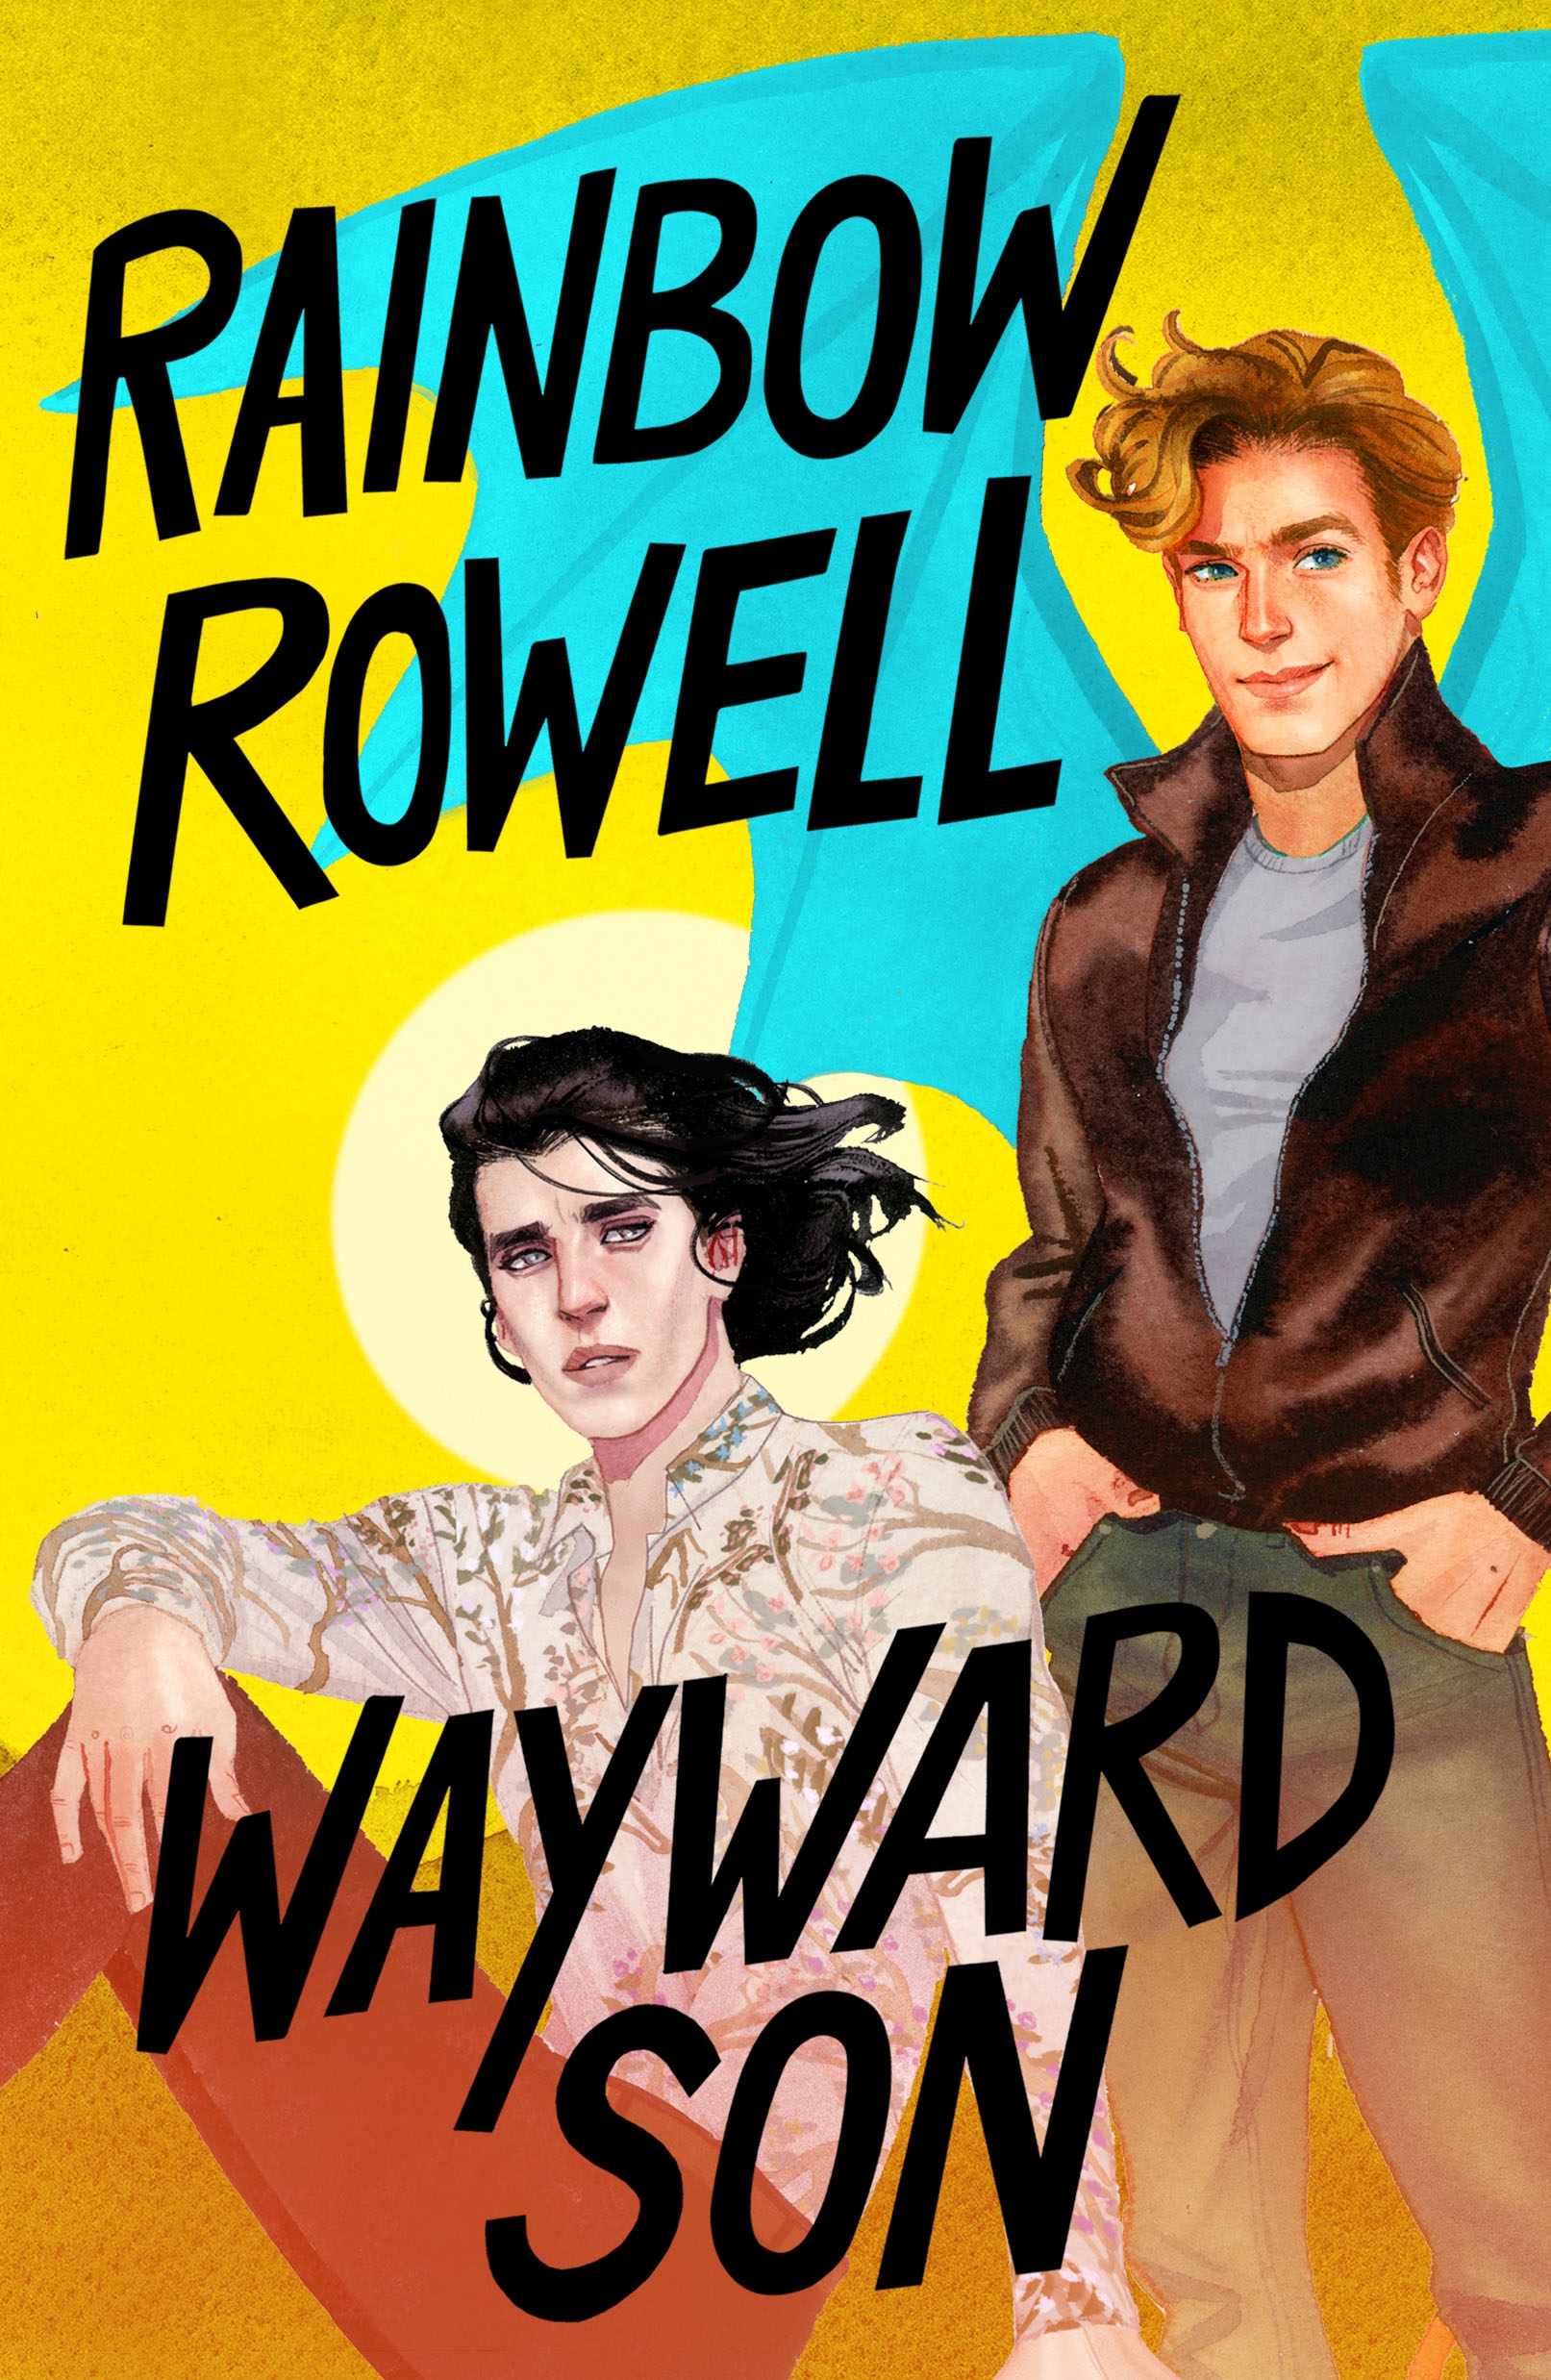 Book “Wayward Son” by Rainbow Rowell — September 24, 2019